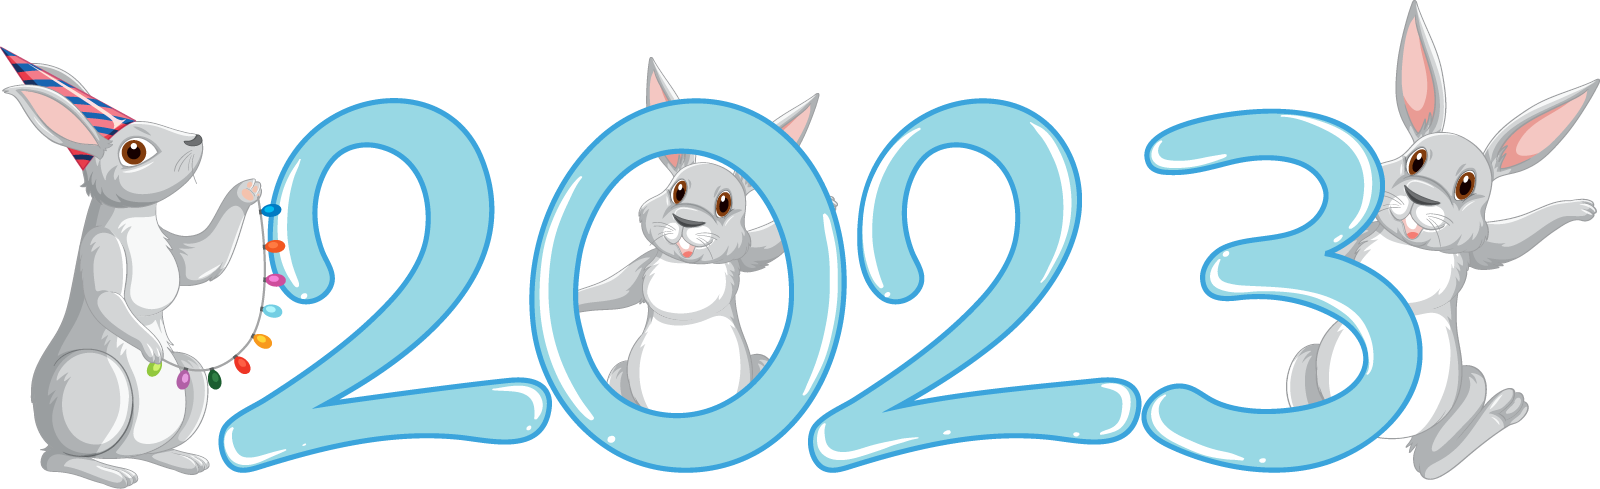 Надпись 2023 с кроликами - новый год, год, 2023